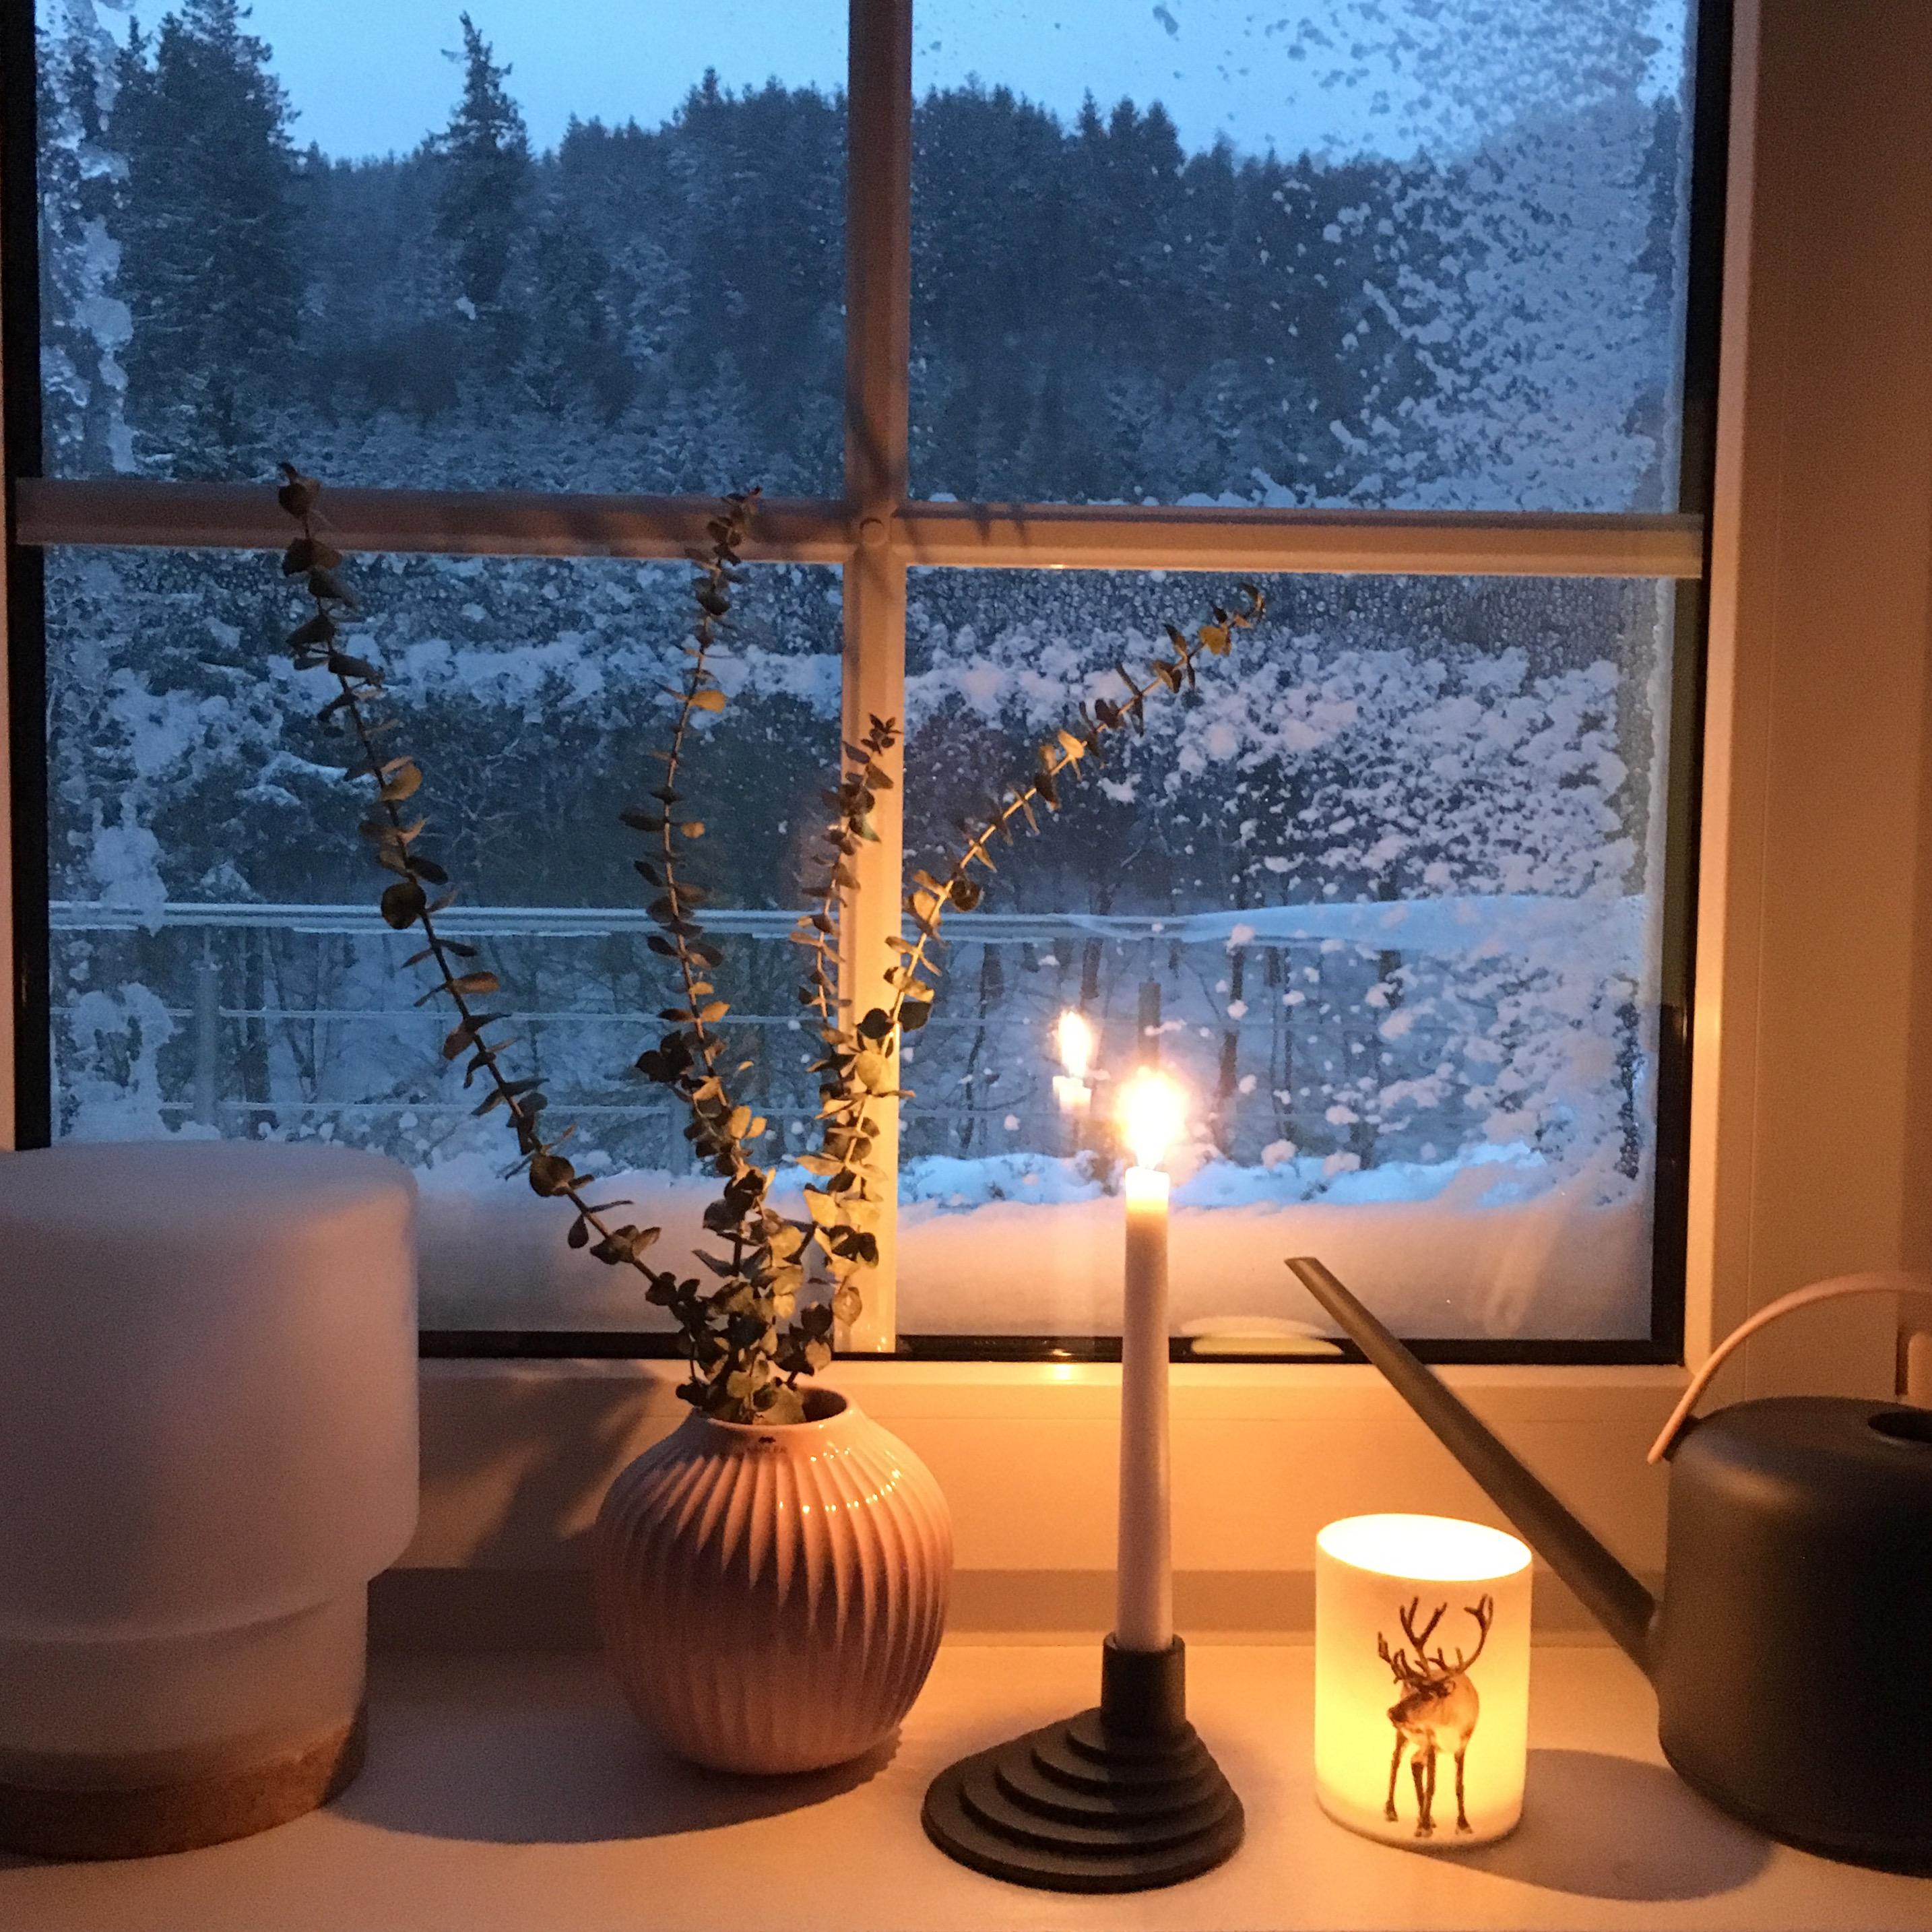 Eingeschneit - so sah’s vergangene Woche aus, wieder nichts mit weißer Weihnacht ... #schnee #snow #merrychristmas #cozy